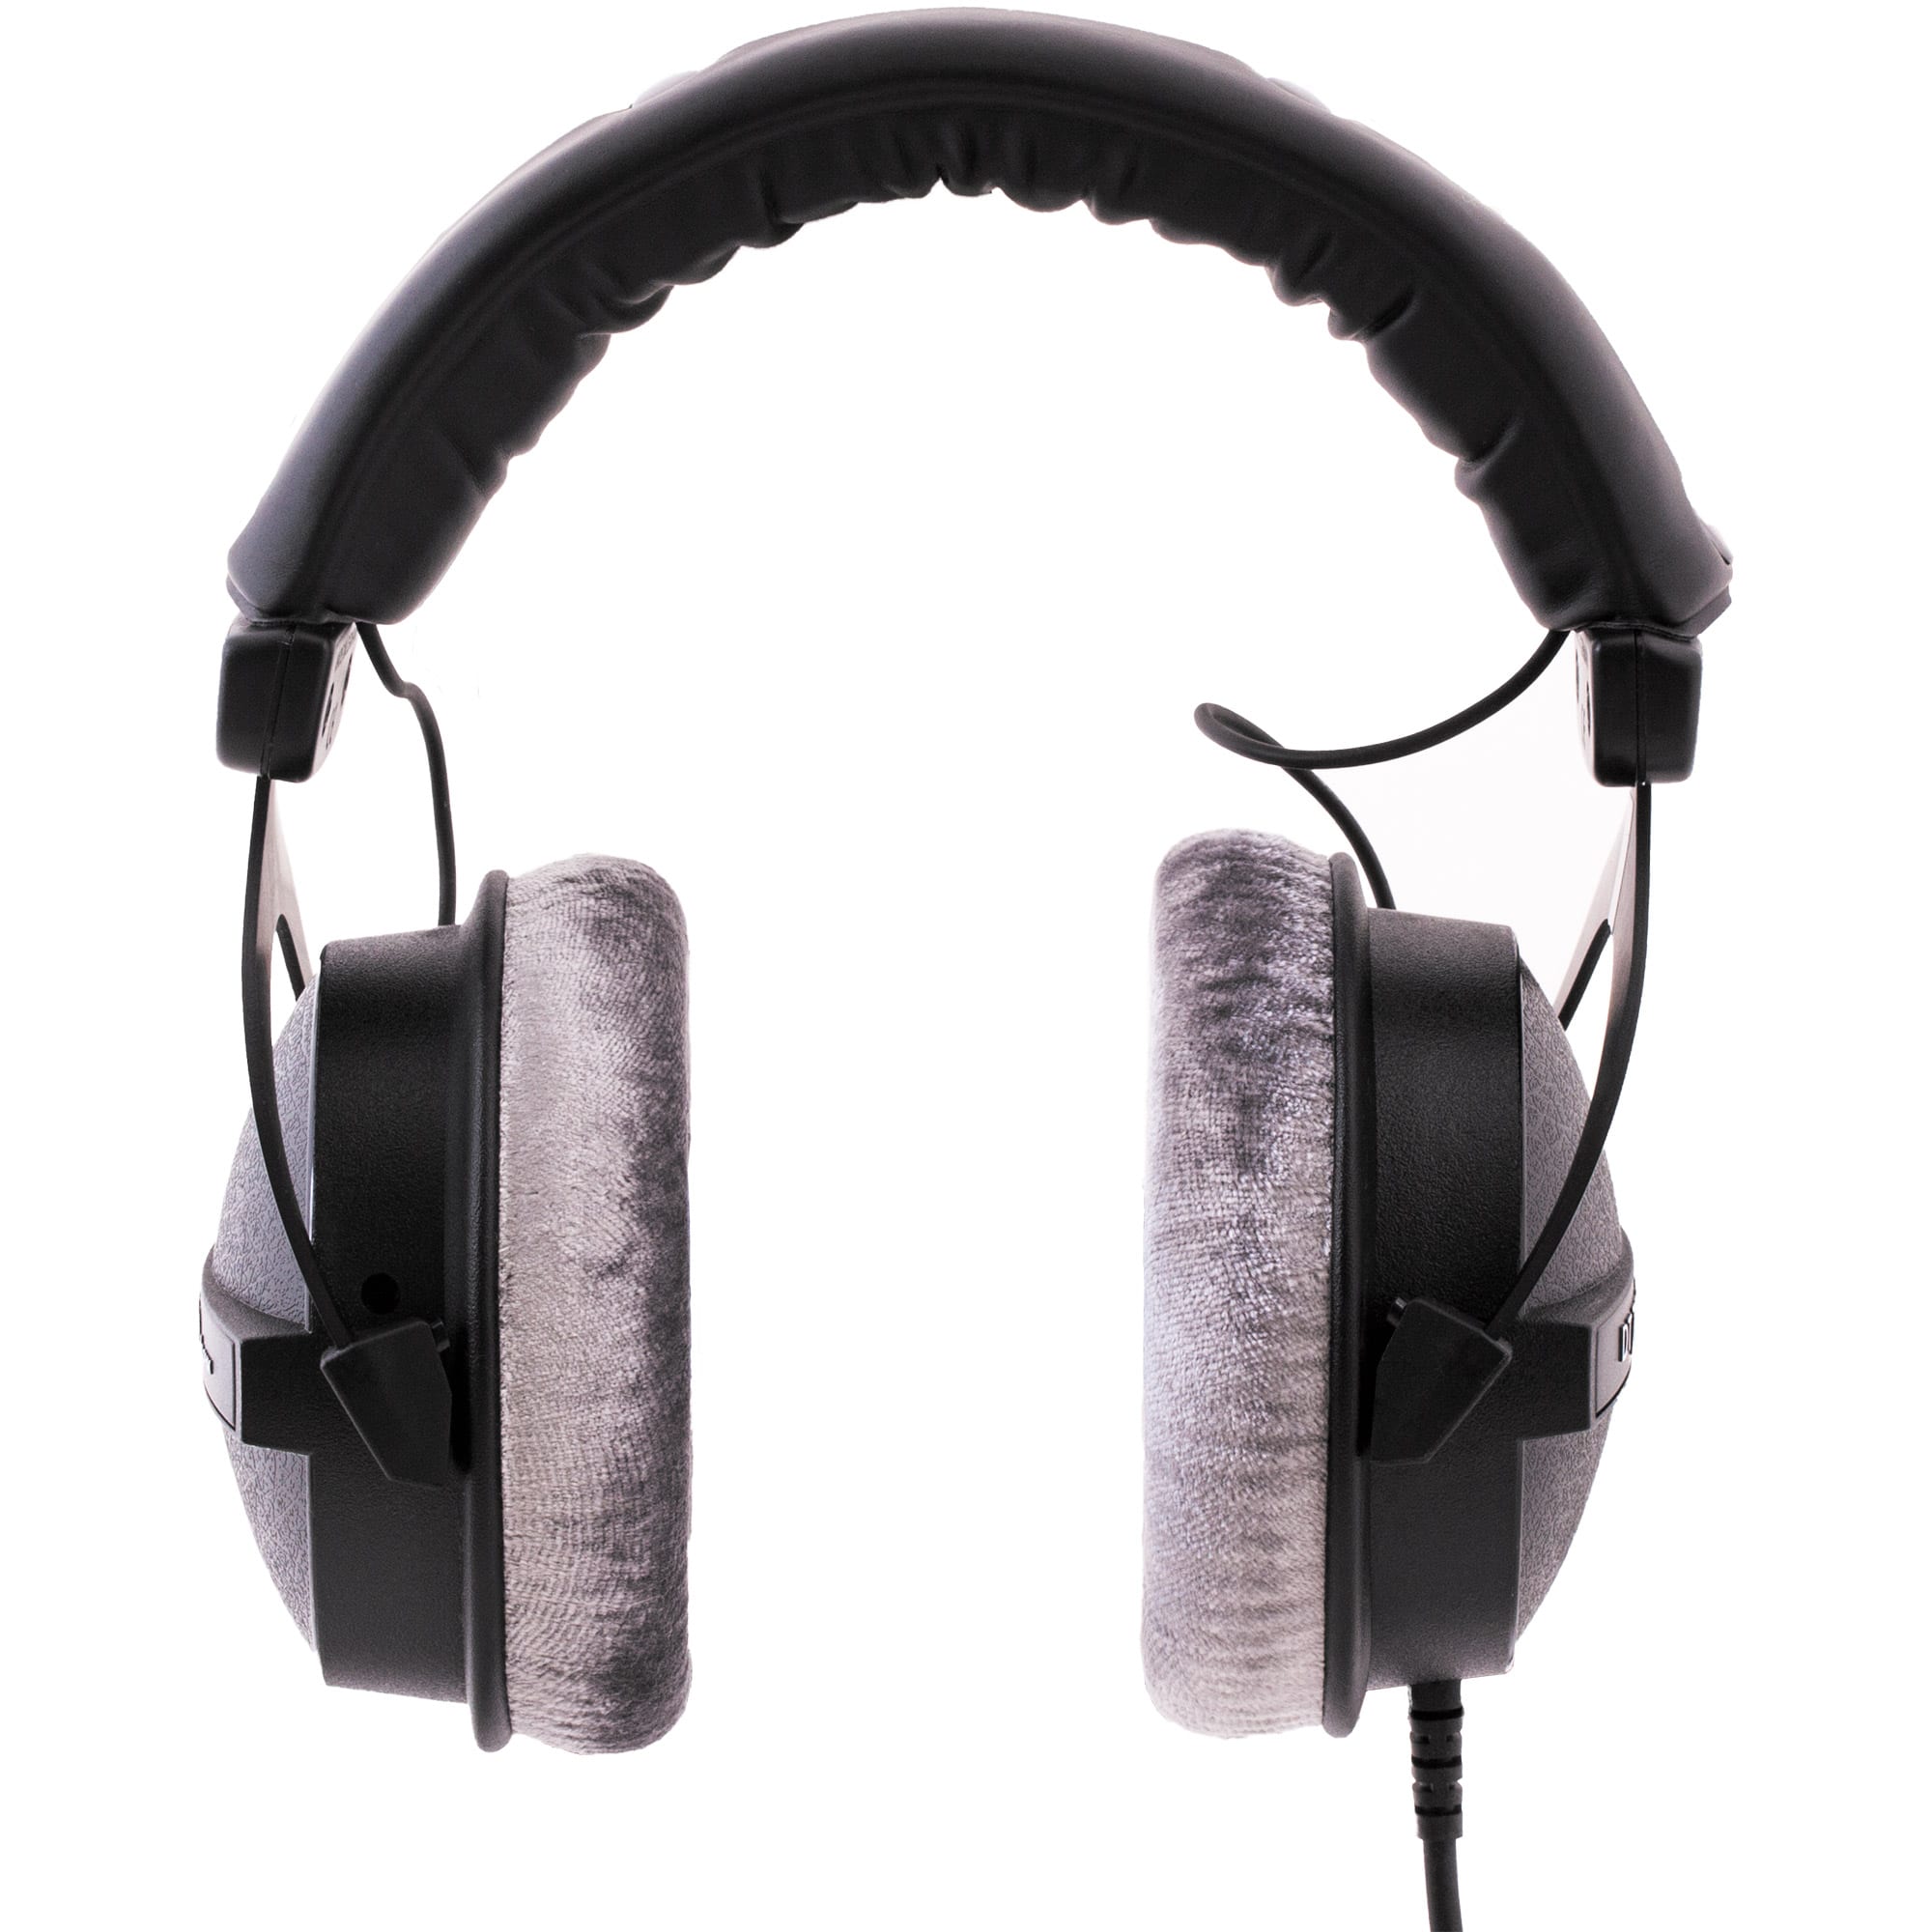 Beyerdynamic DT 770 Pro 80 ohm – Antlion Audio